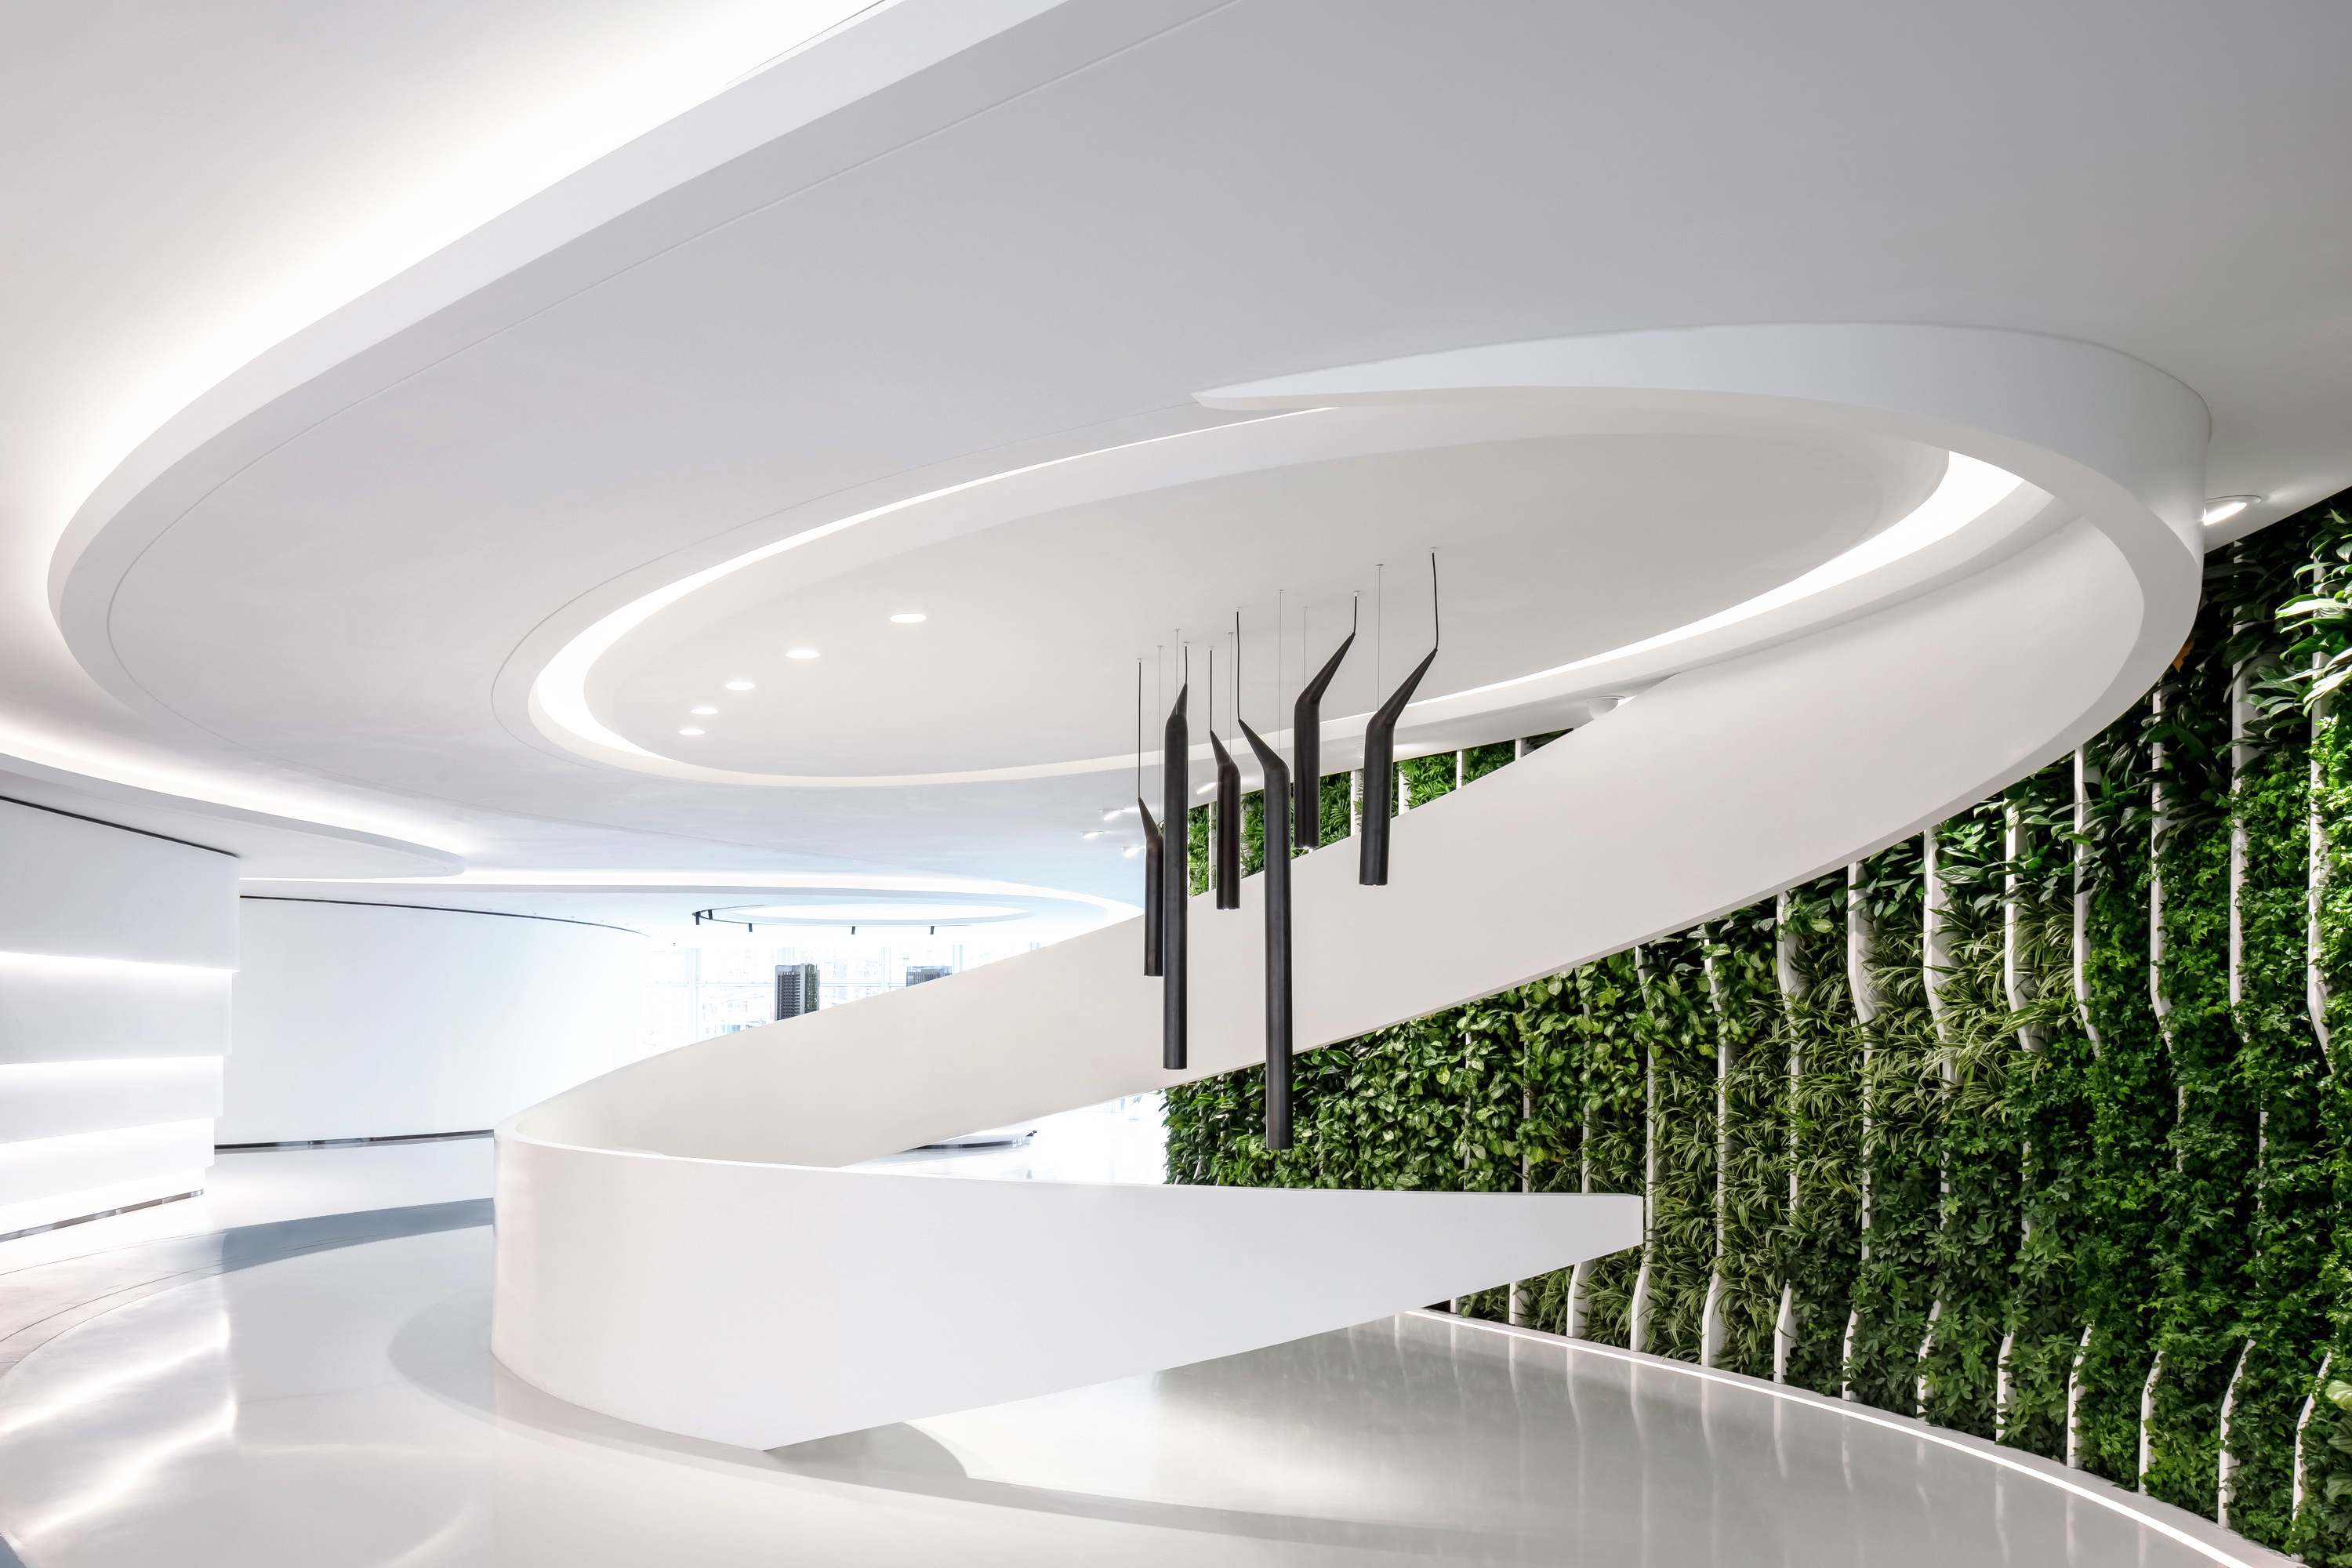 Hag汇格设计丨向上生長的力量 • 远洋滨海大廈办公展示中心